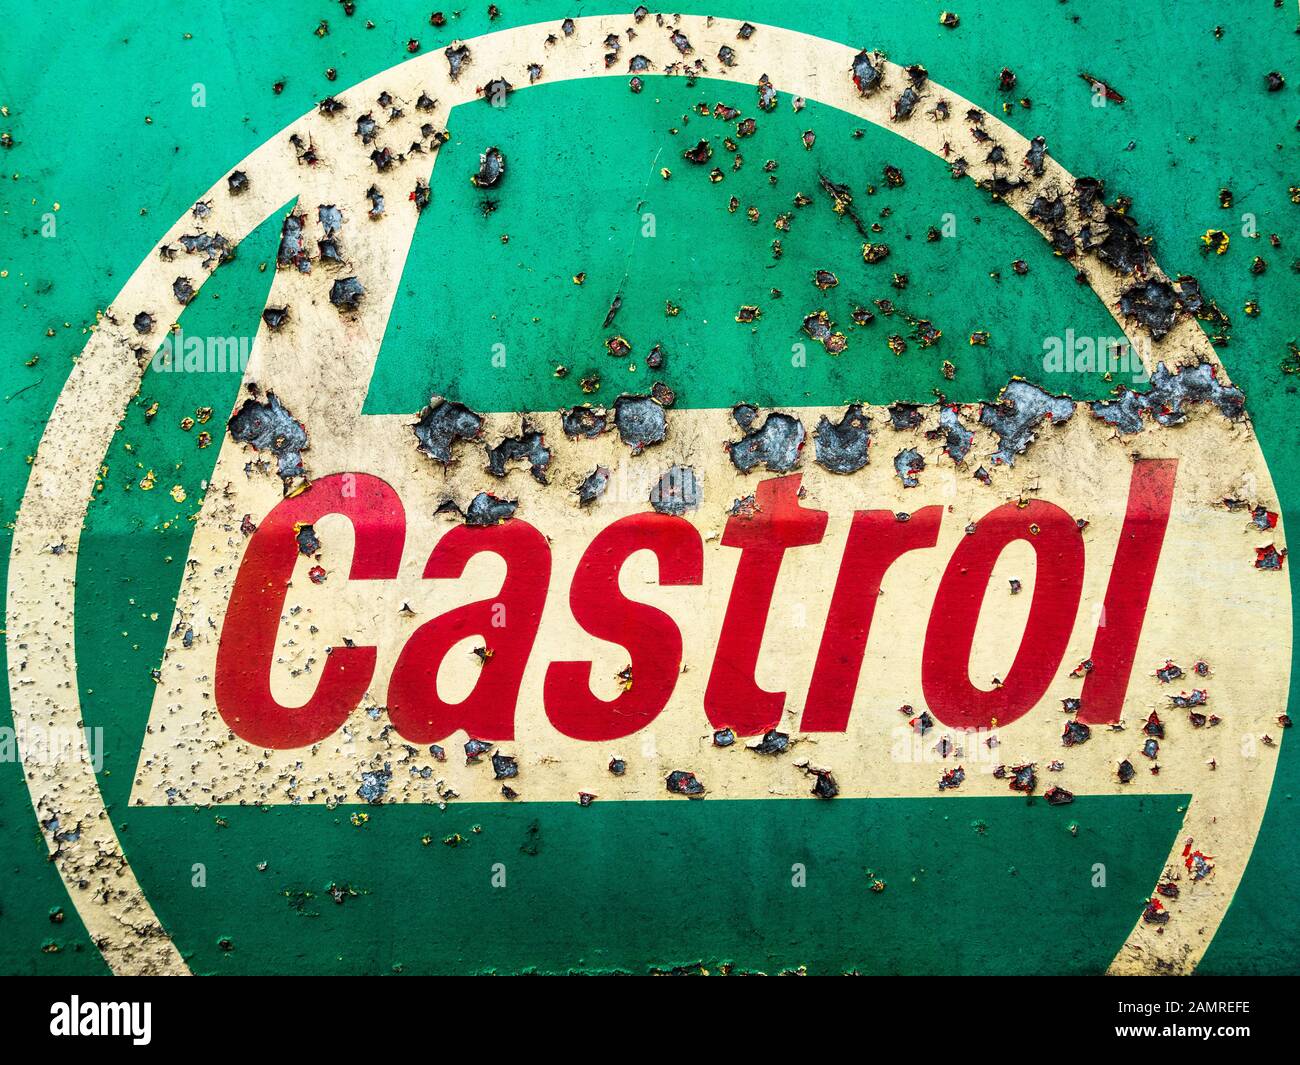 Castrol oil logo on garage workshop door in Spain Stock Photo